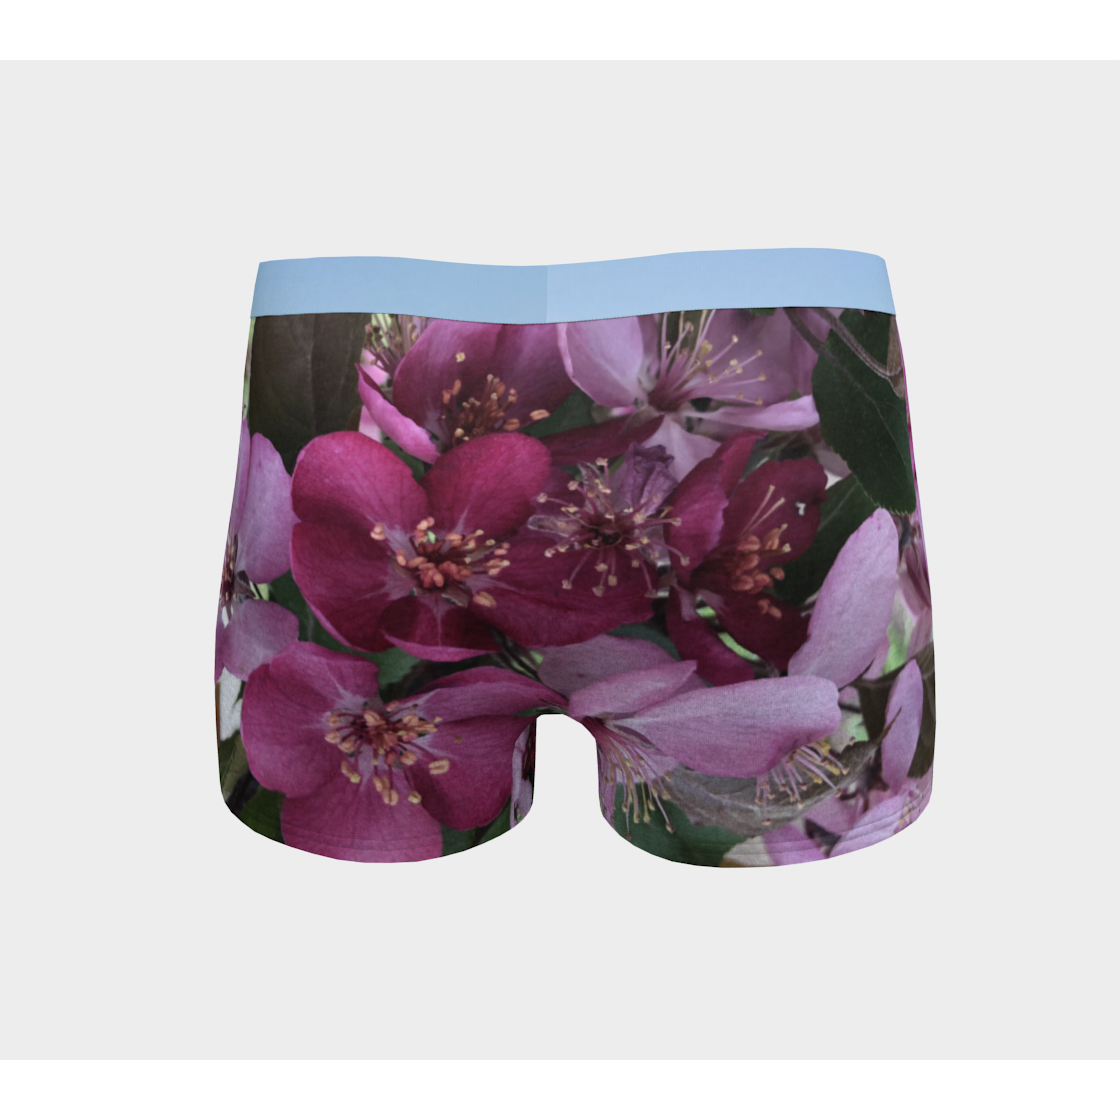 Boy Shorts, Women's Underwear, Flower Petal, Light Band, Back